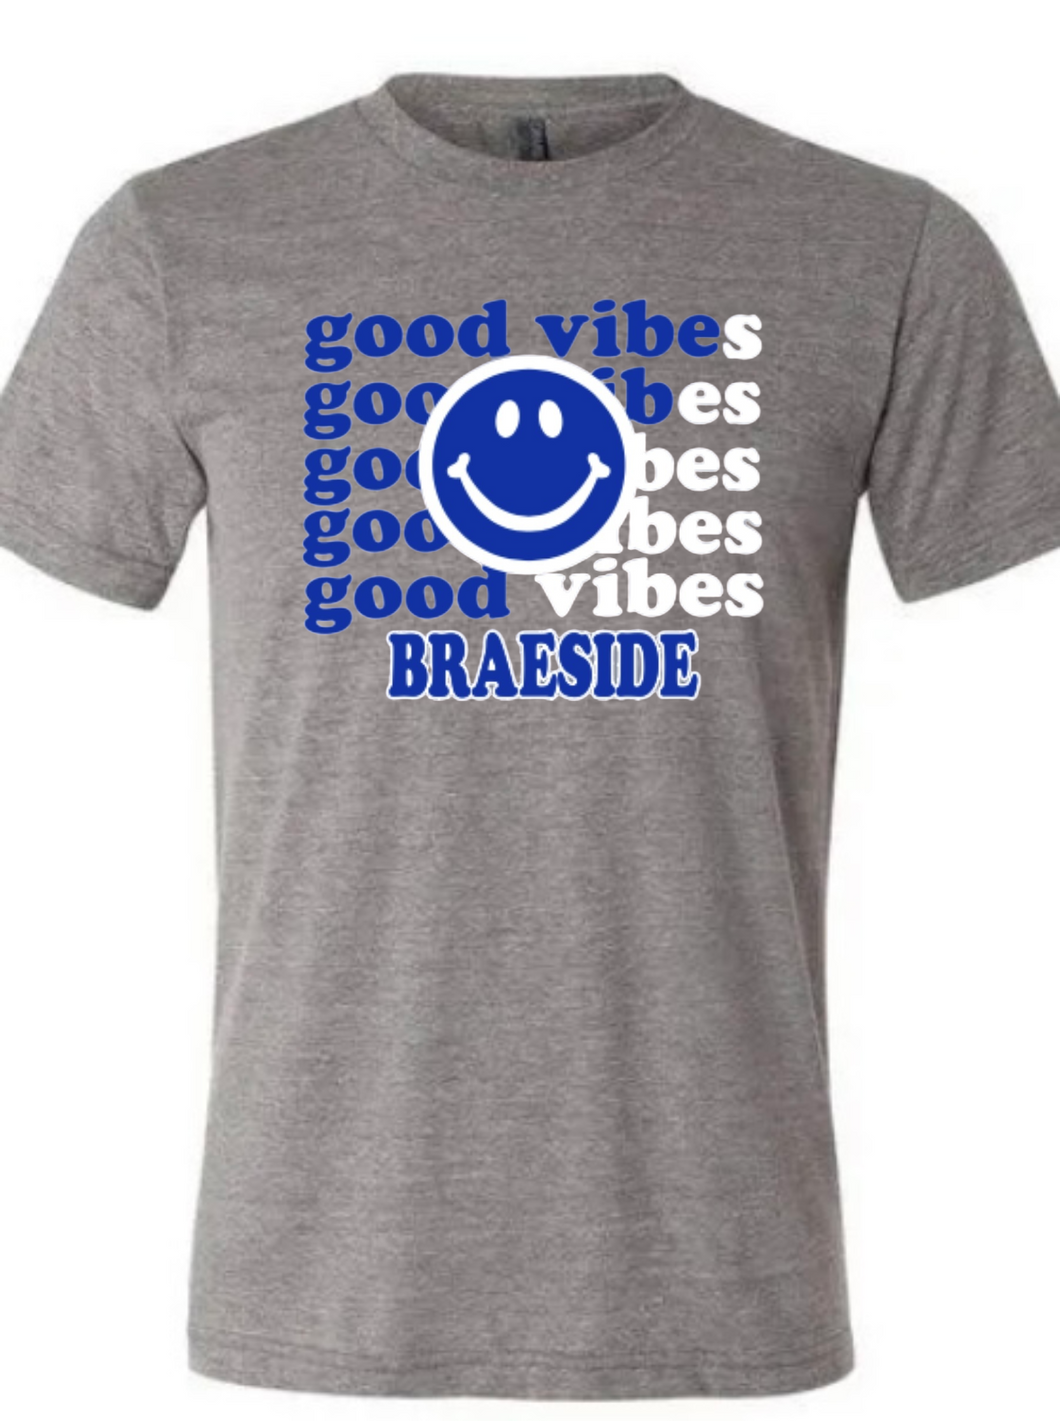 BRAESIDE Good Vibes Tee